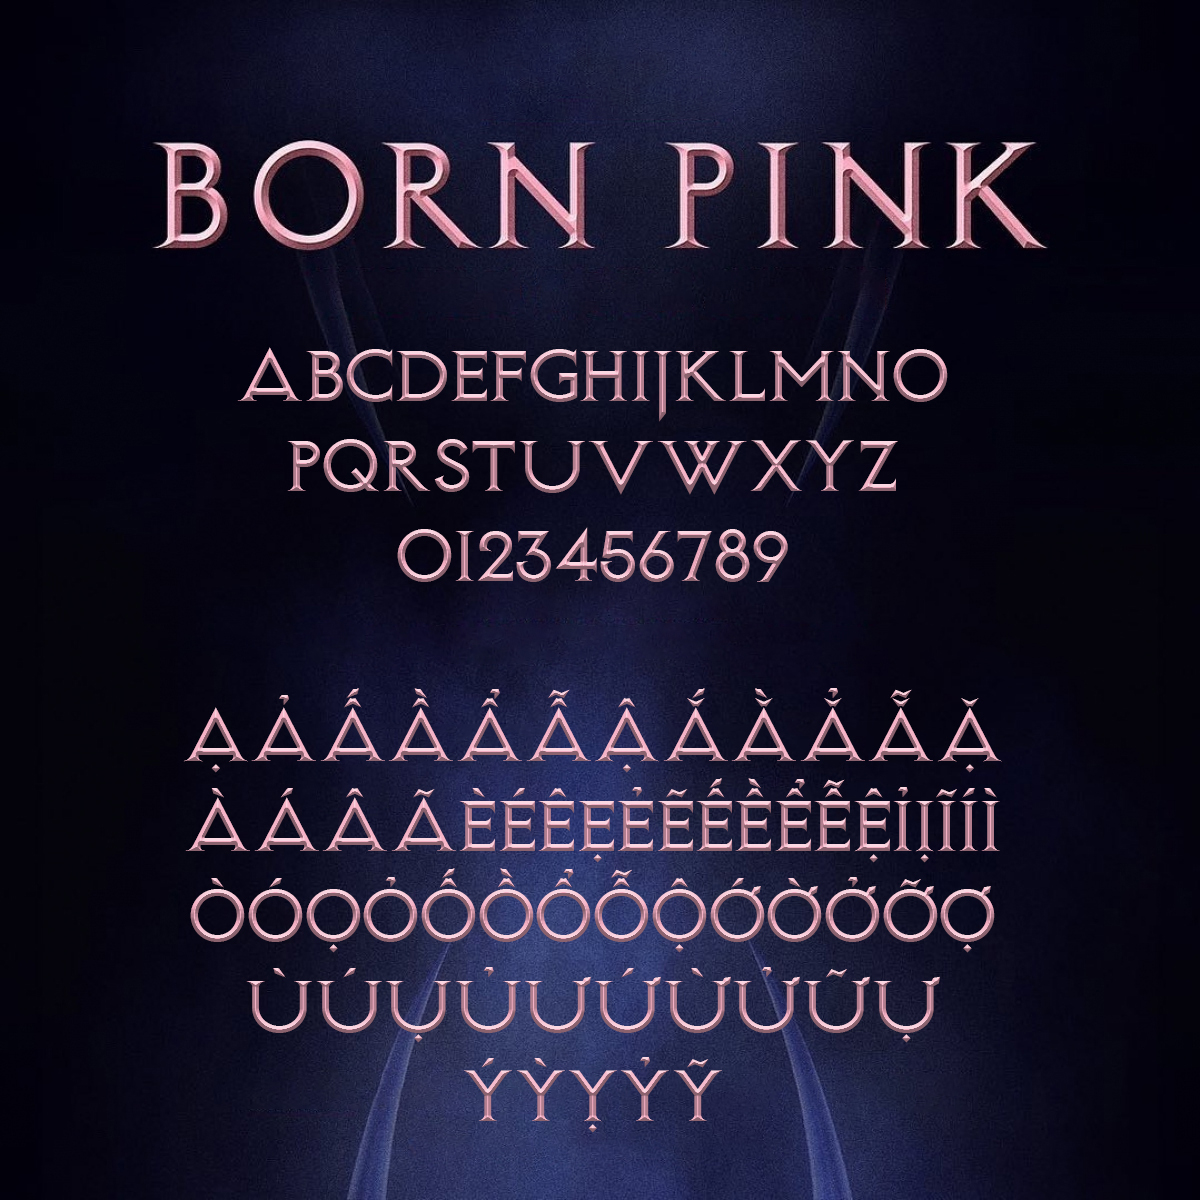 Font Born Pink Việt hóa - BLACKPINK đổ bộ Hà Nội